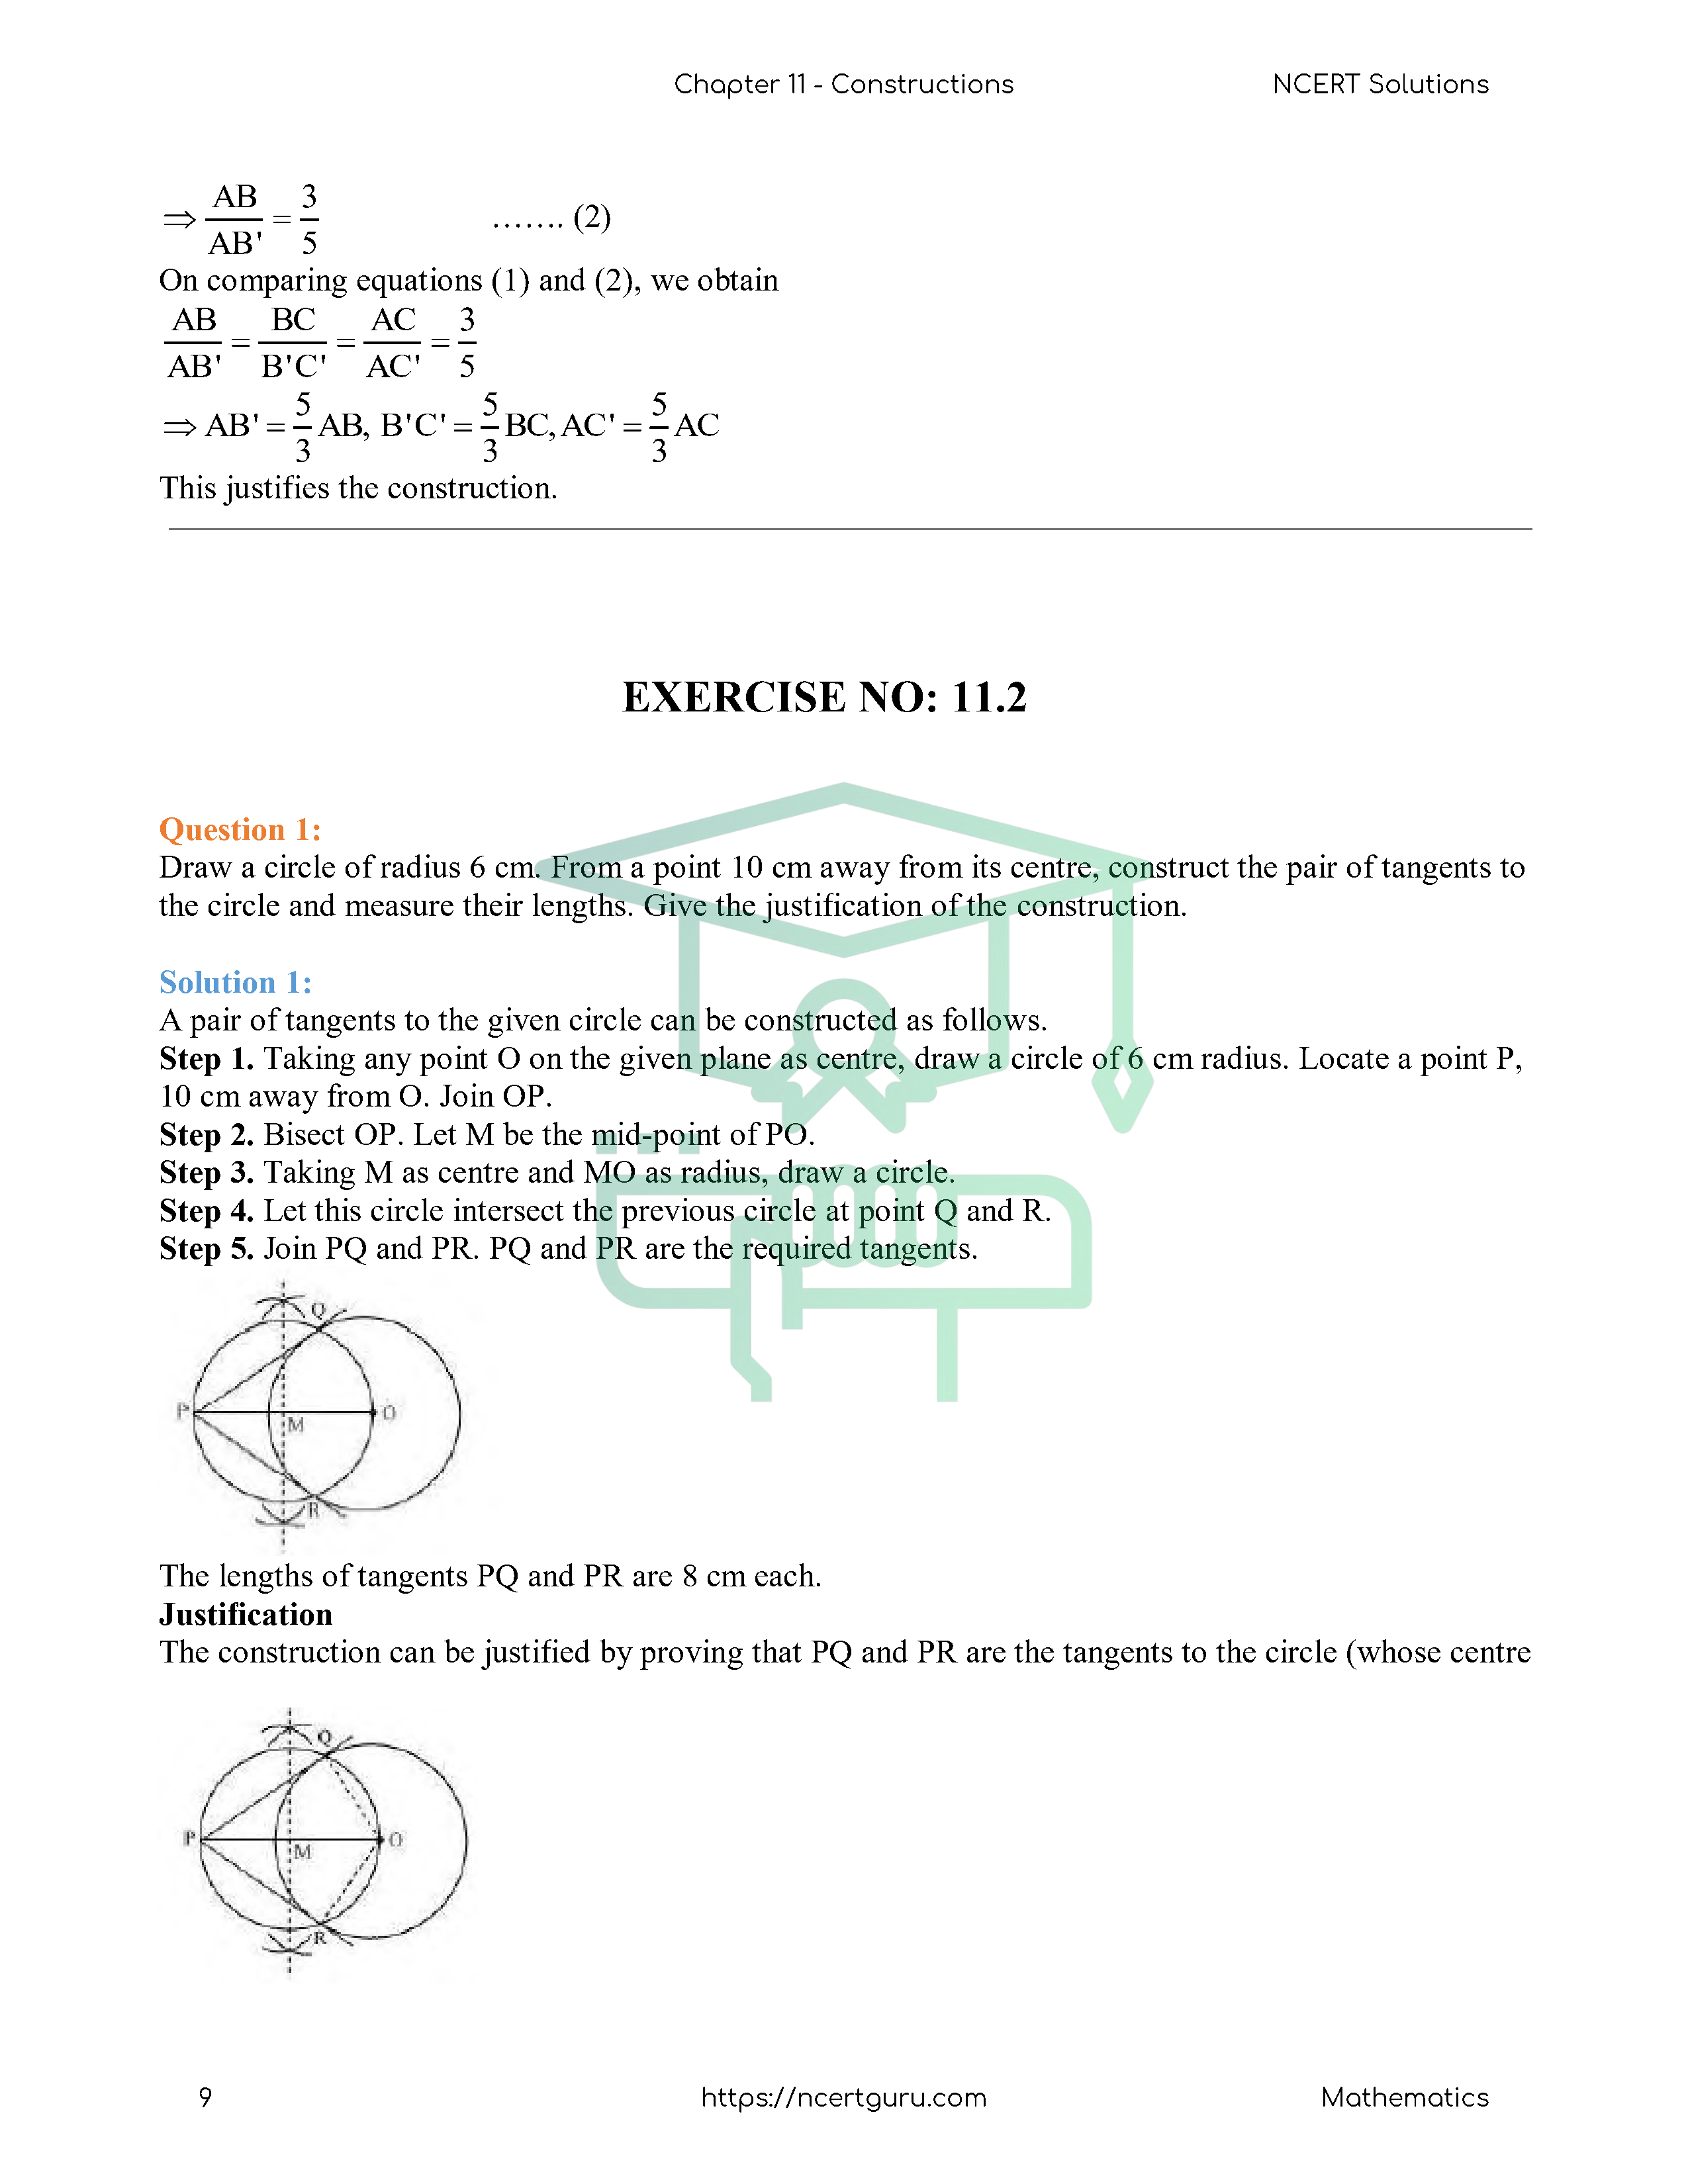 NCERT Solutions for Class 10 Maths Chapter 11